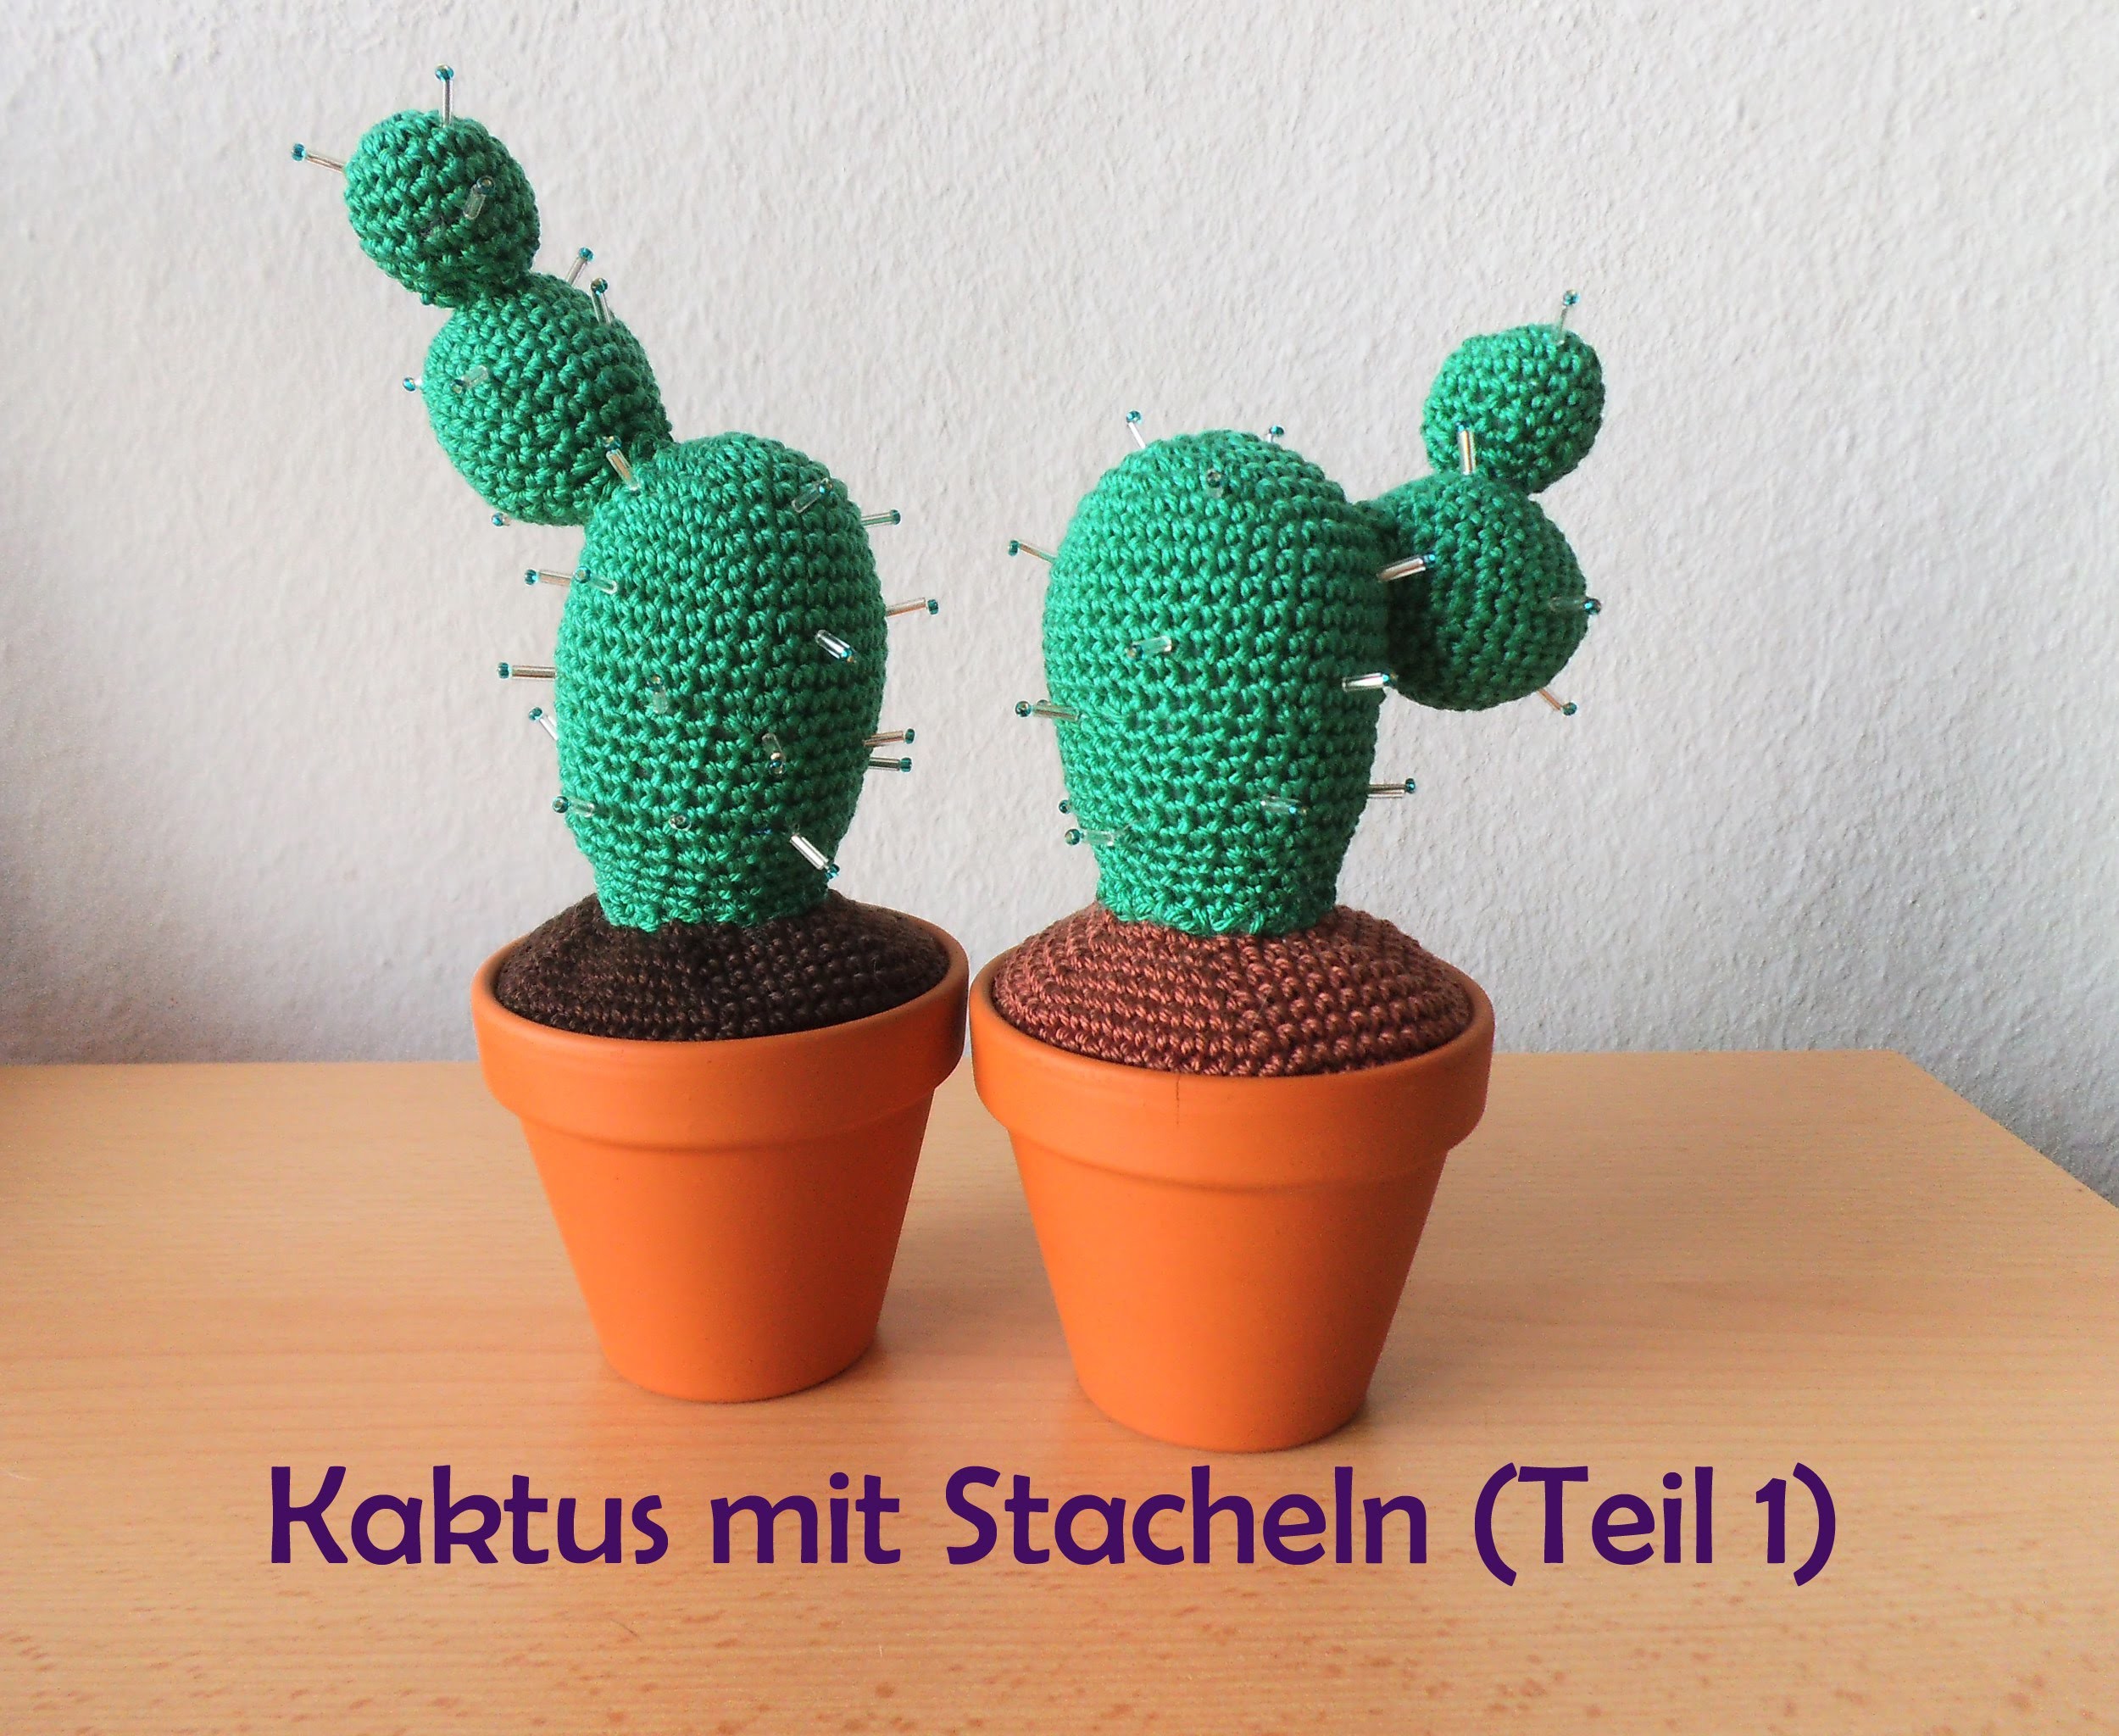 Kaktus mit Stacheln - Teil 1 - Häkelanleitung